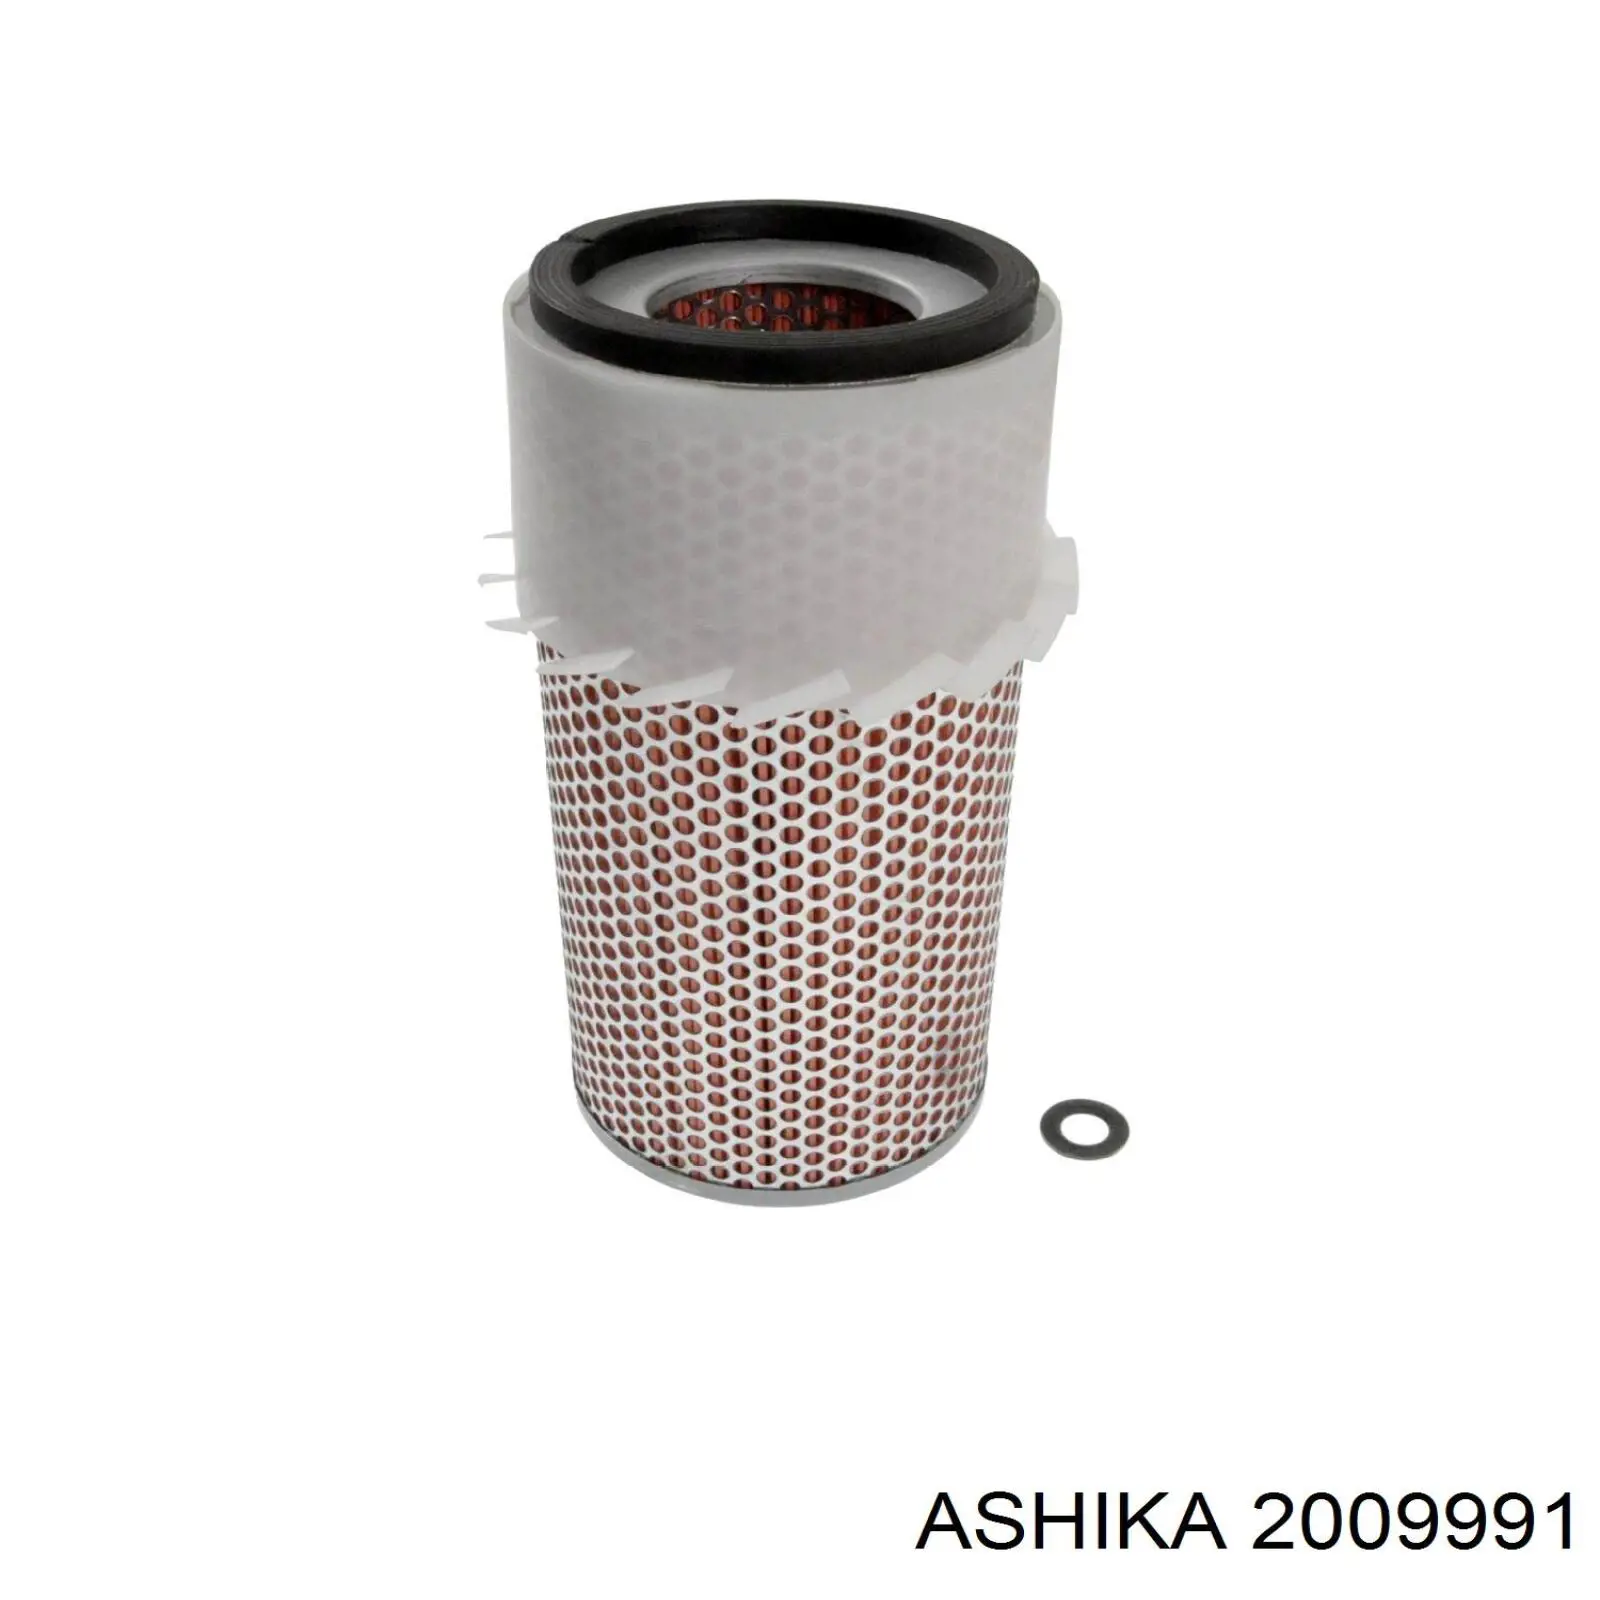 20-09-991 Ashika filtro de aire